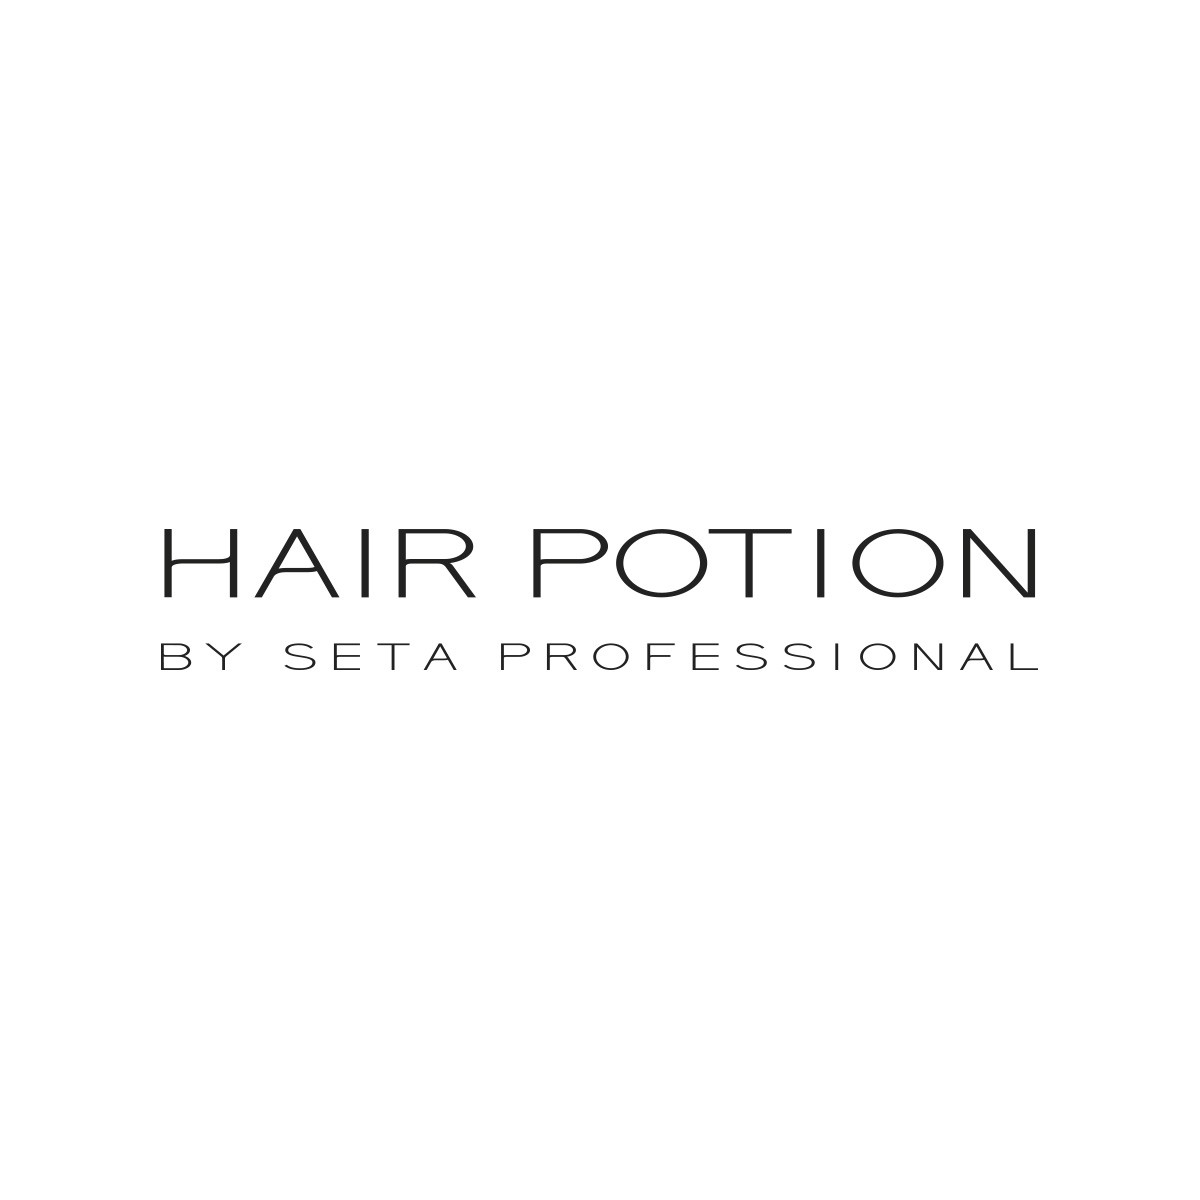 Hair Potion SETA